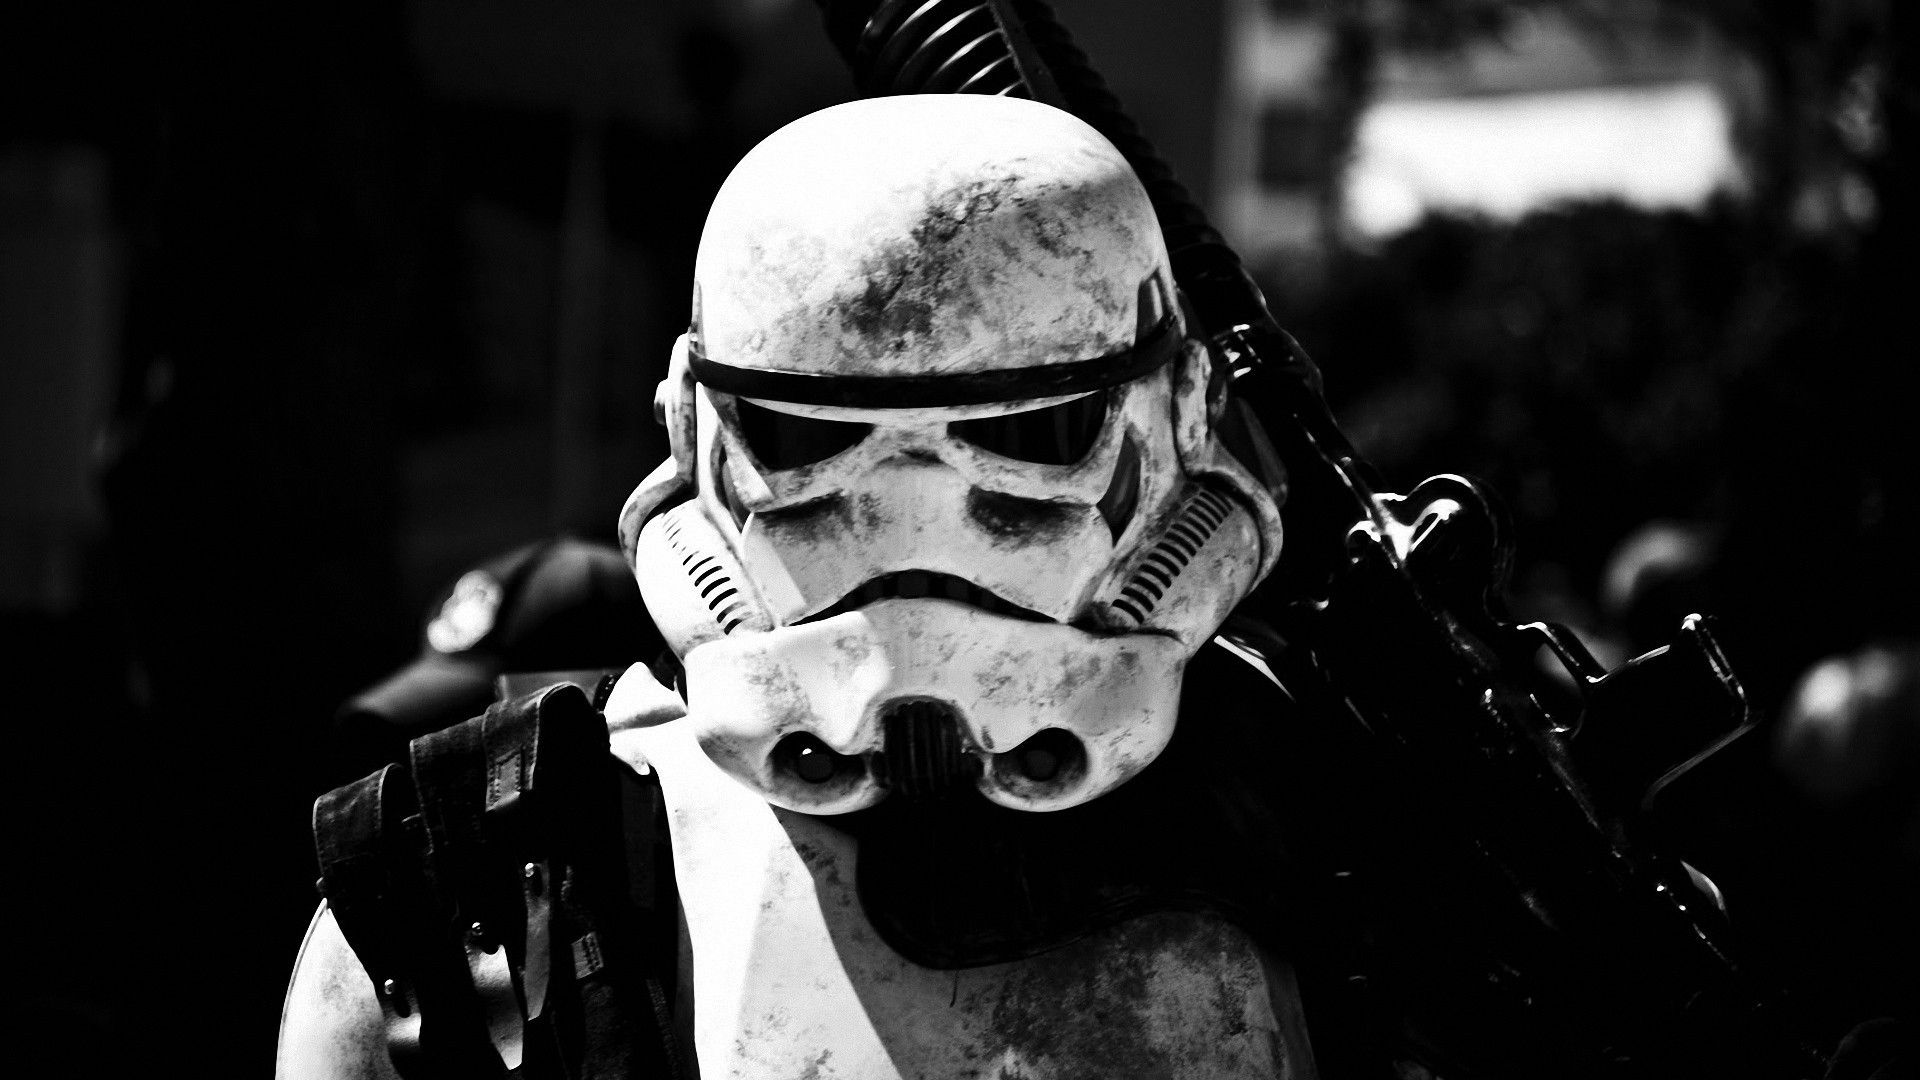 fond d'écran cool stormtrooper,noir,équipement de protection individuelle,noir et blanc,monochrome,casque